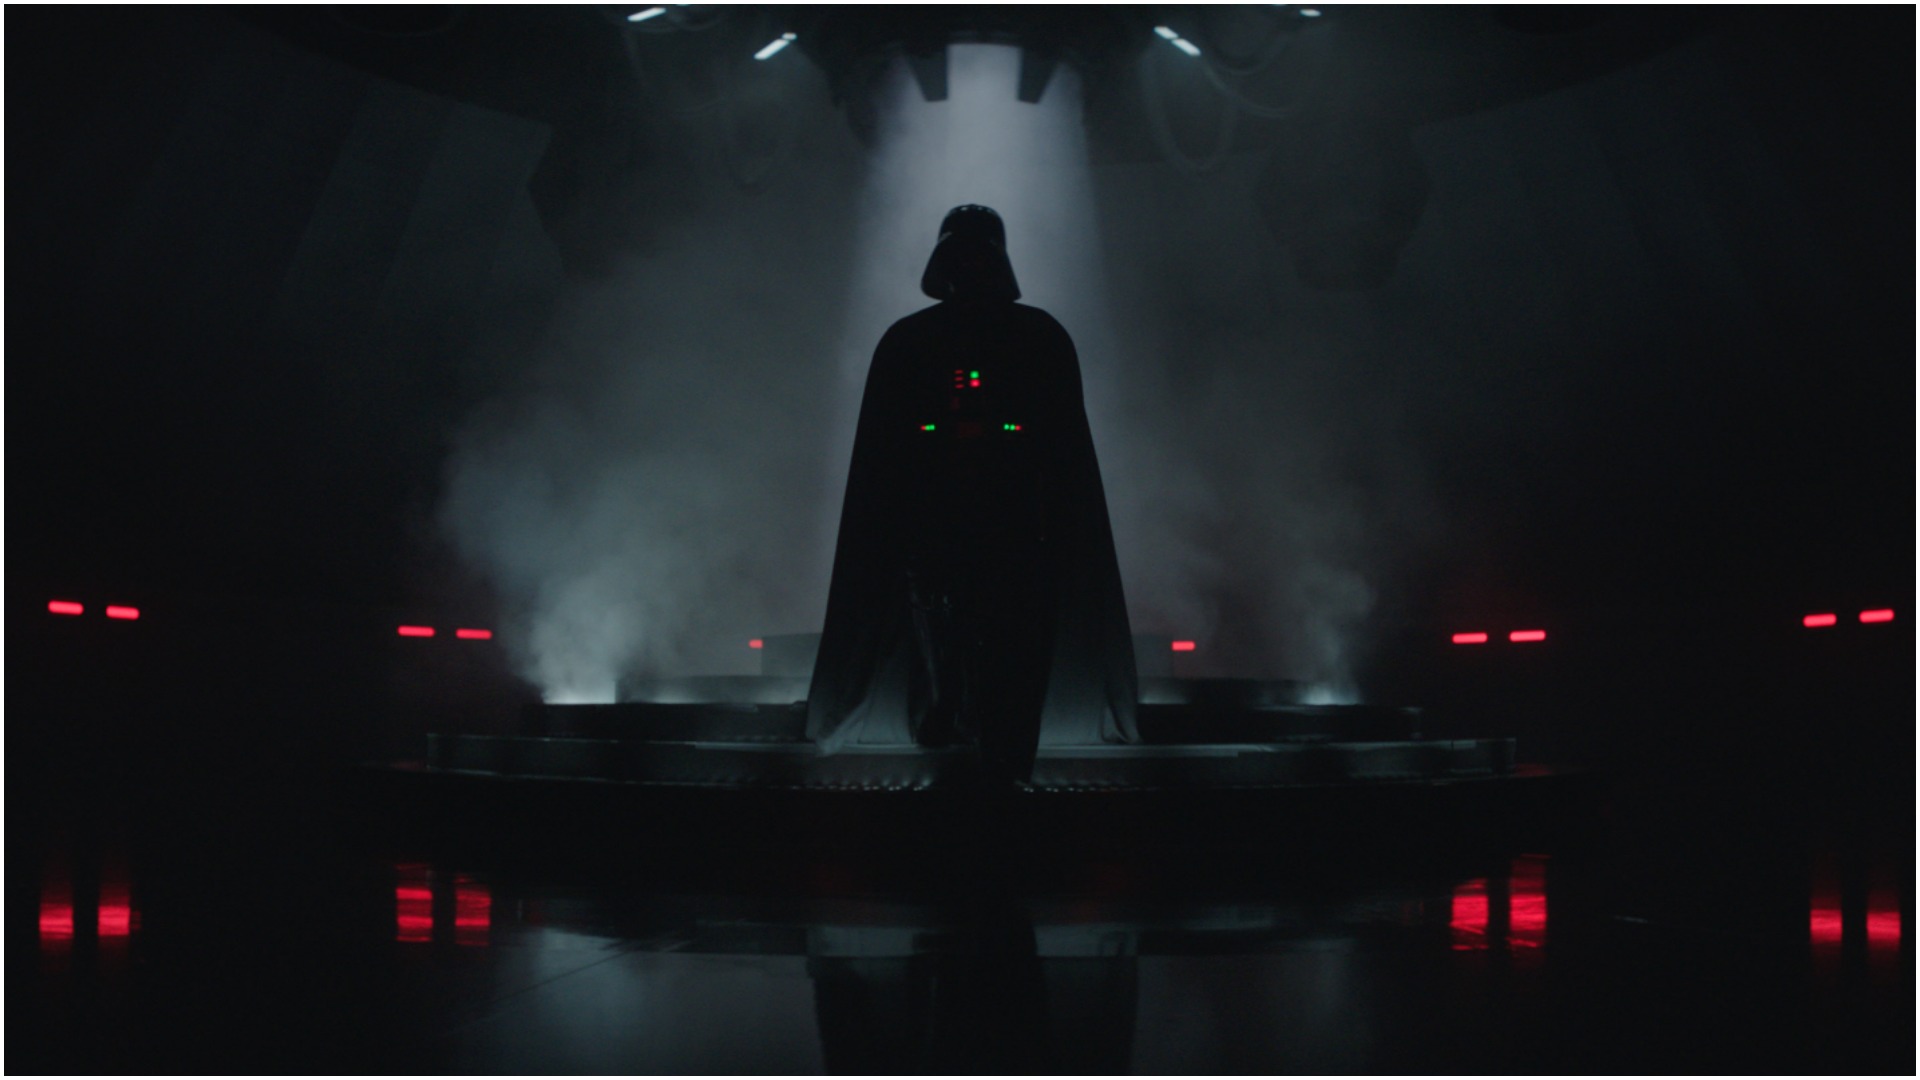 Obi-Wan Kenobi brings back James Earl Jones to voice Darth Vader